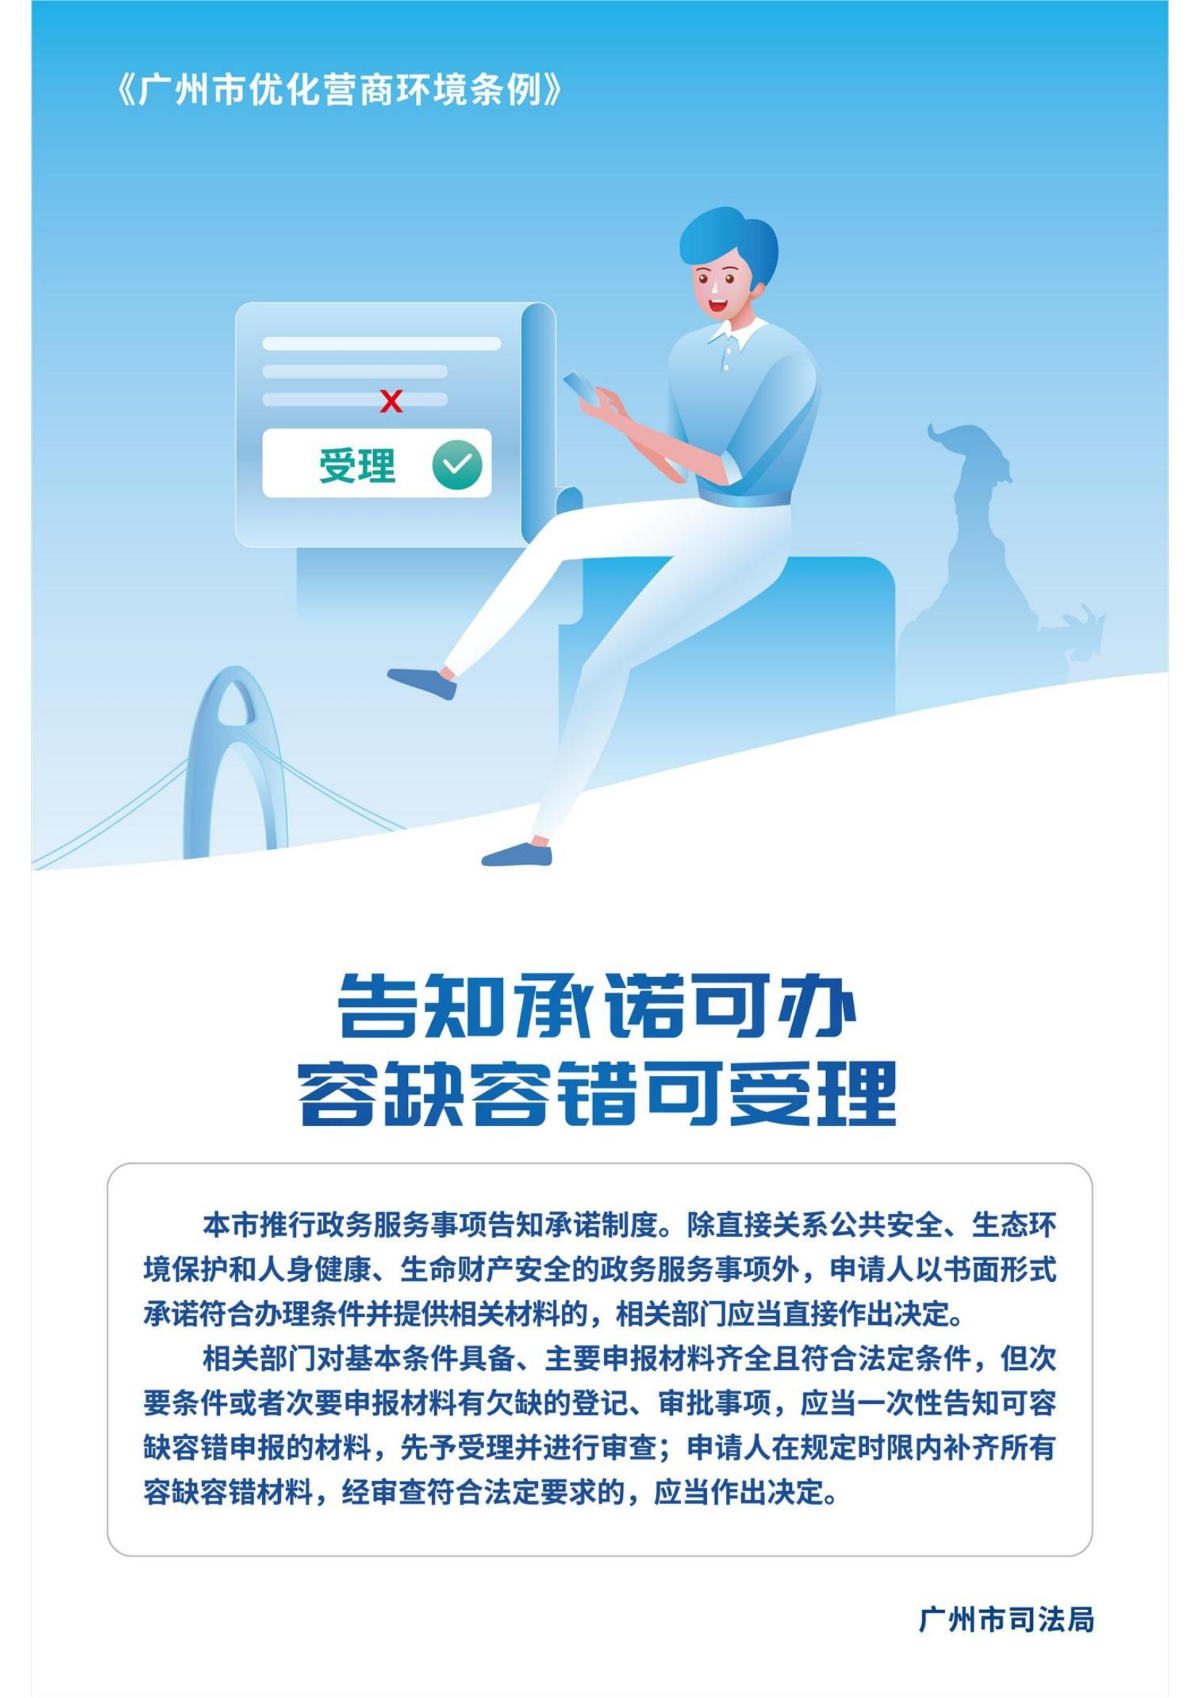 广州市优化营商环境条例宣传海报_01.jpg